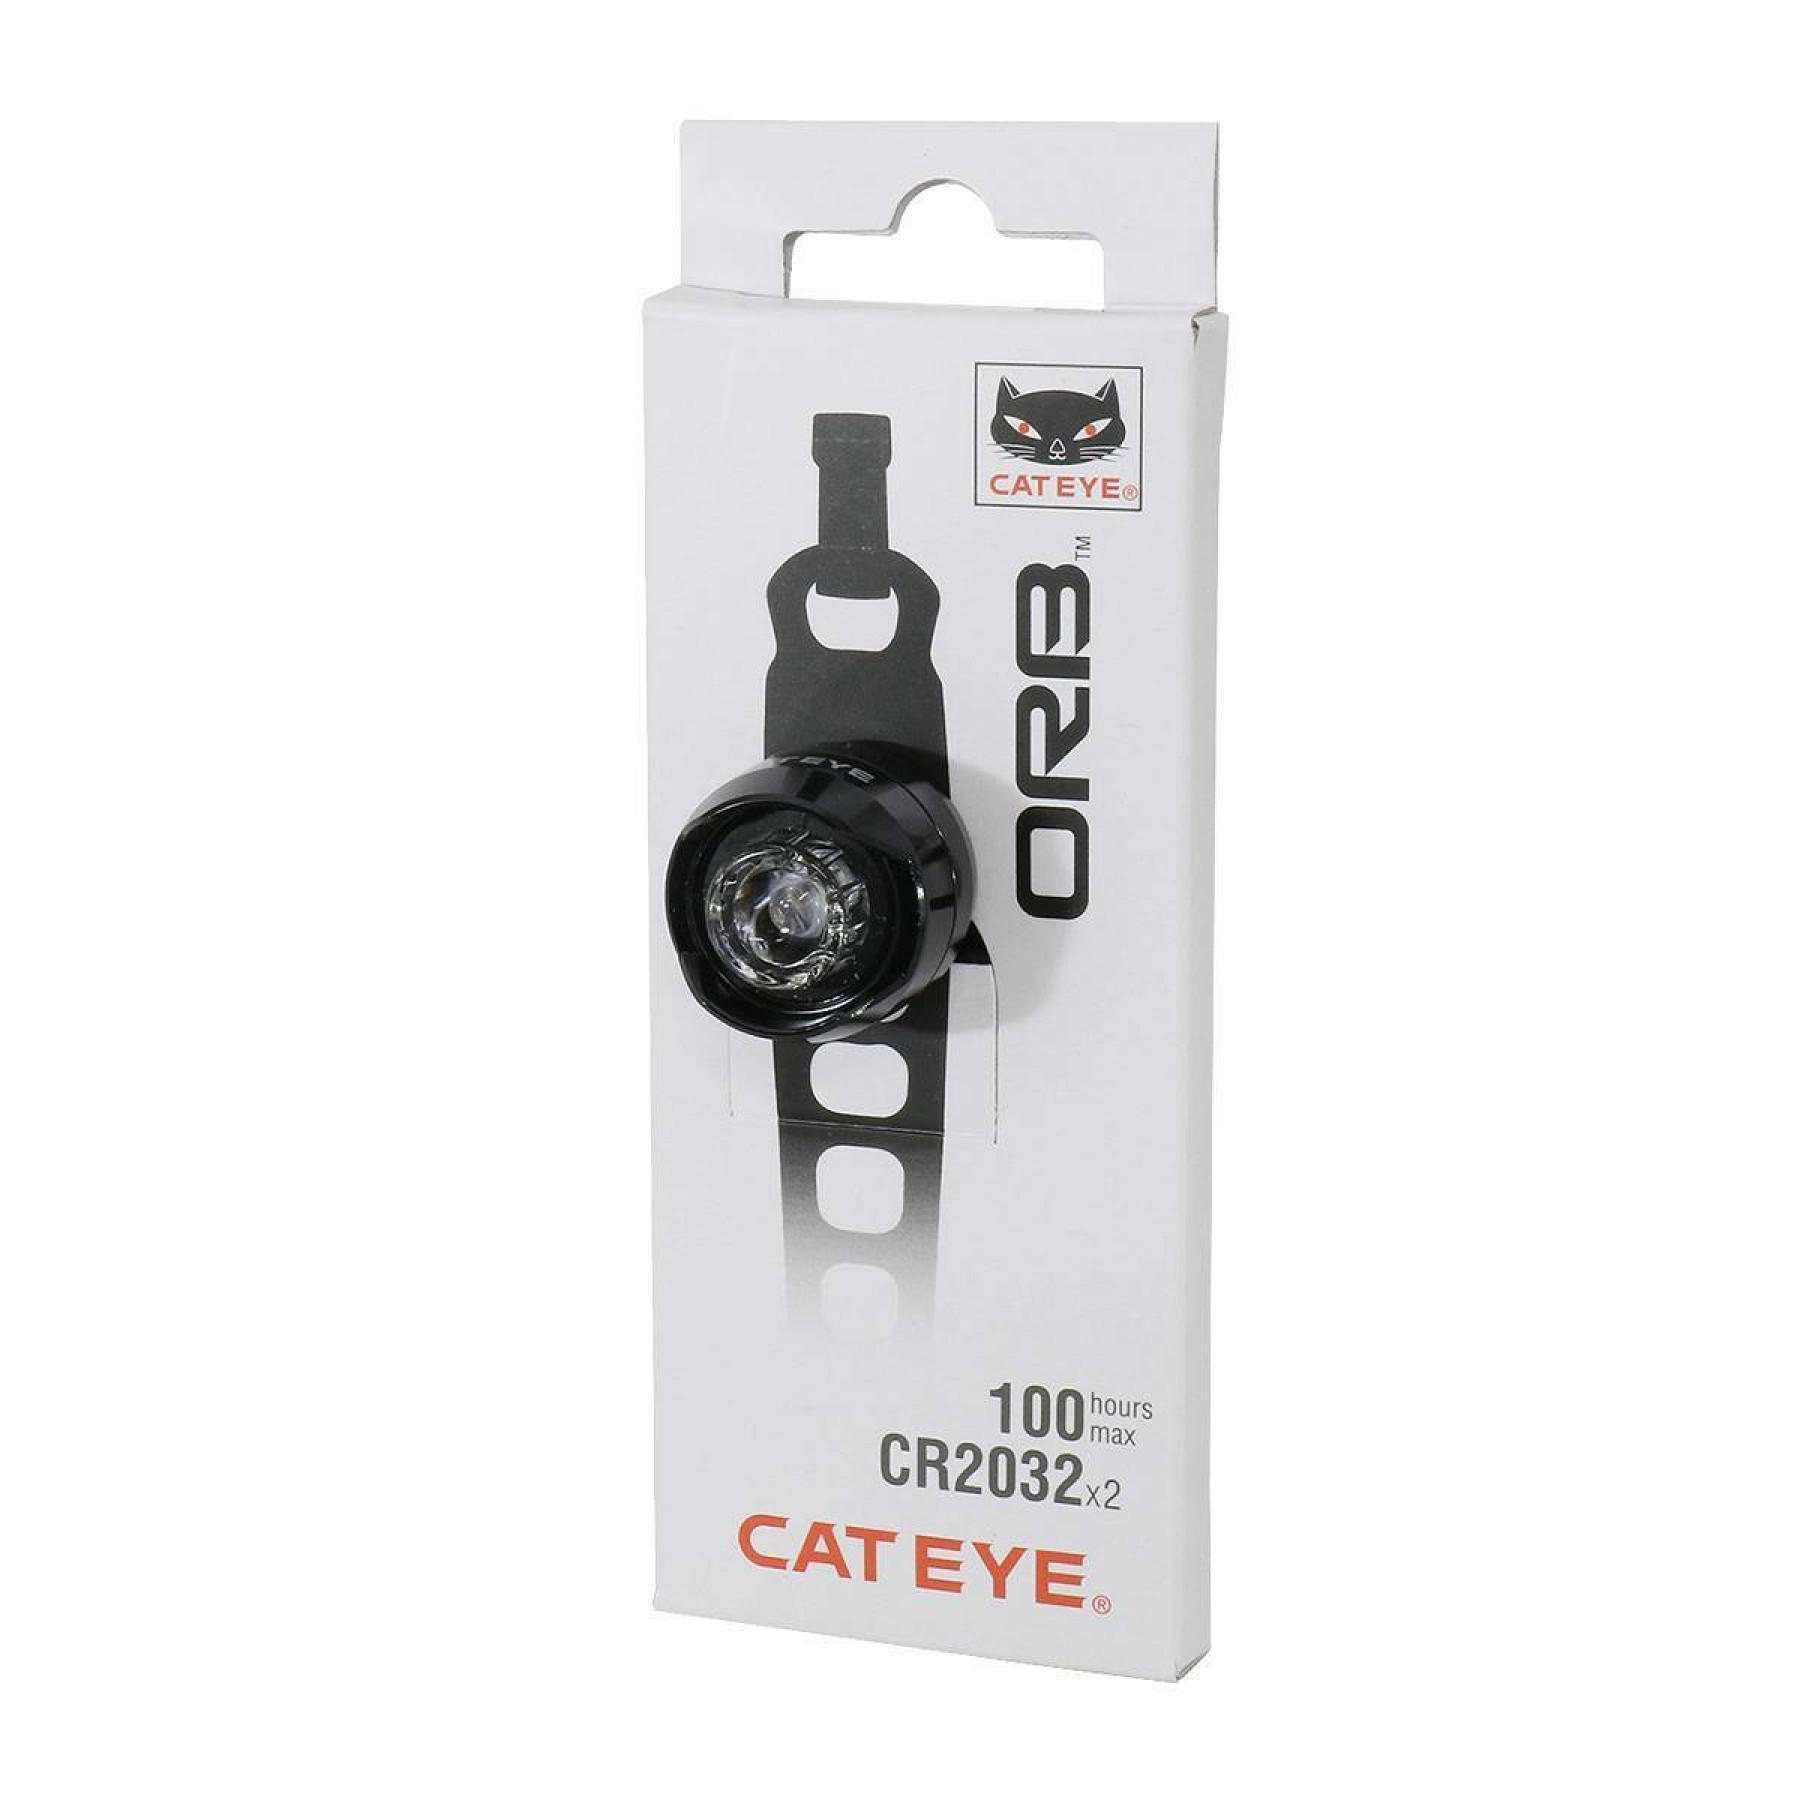 voorverlichting Cateye Orb rechargeable